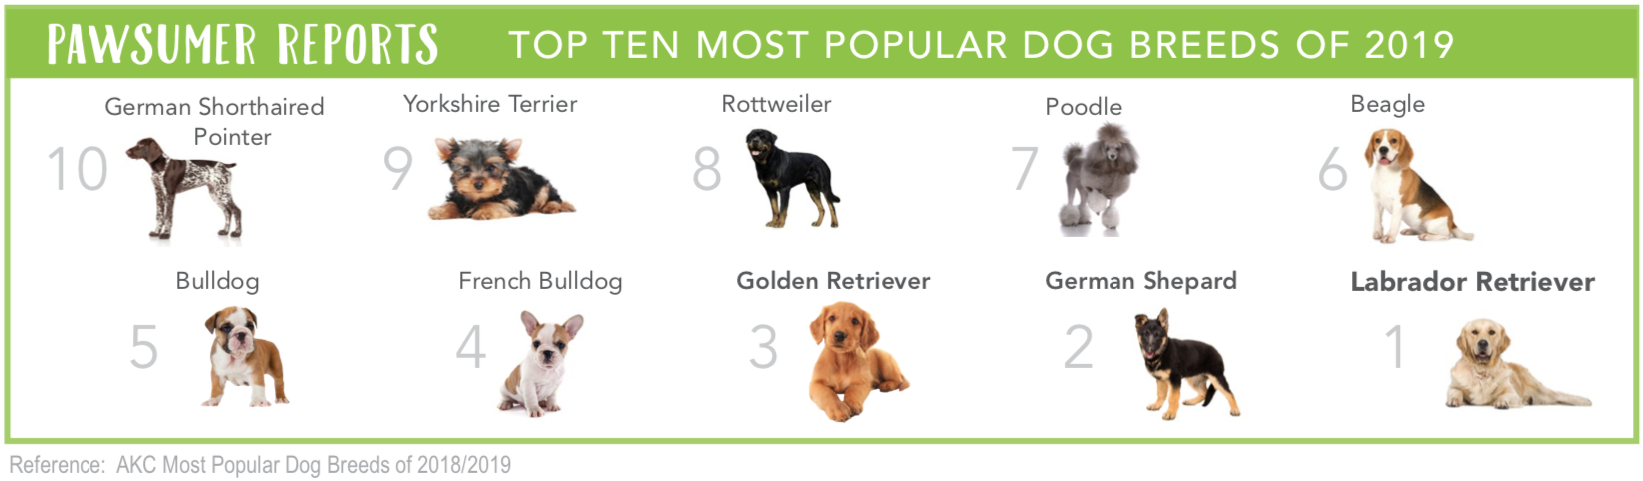 Top Ten Most Popular Dog Breeds of 2019 